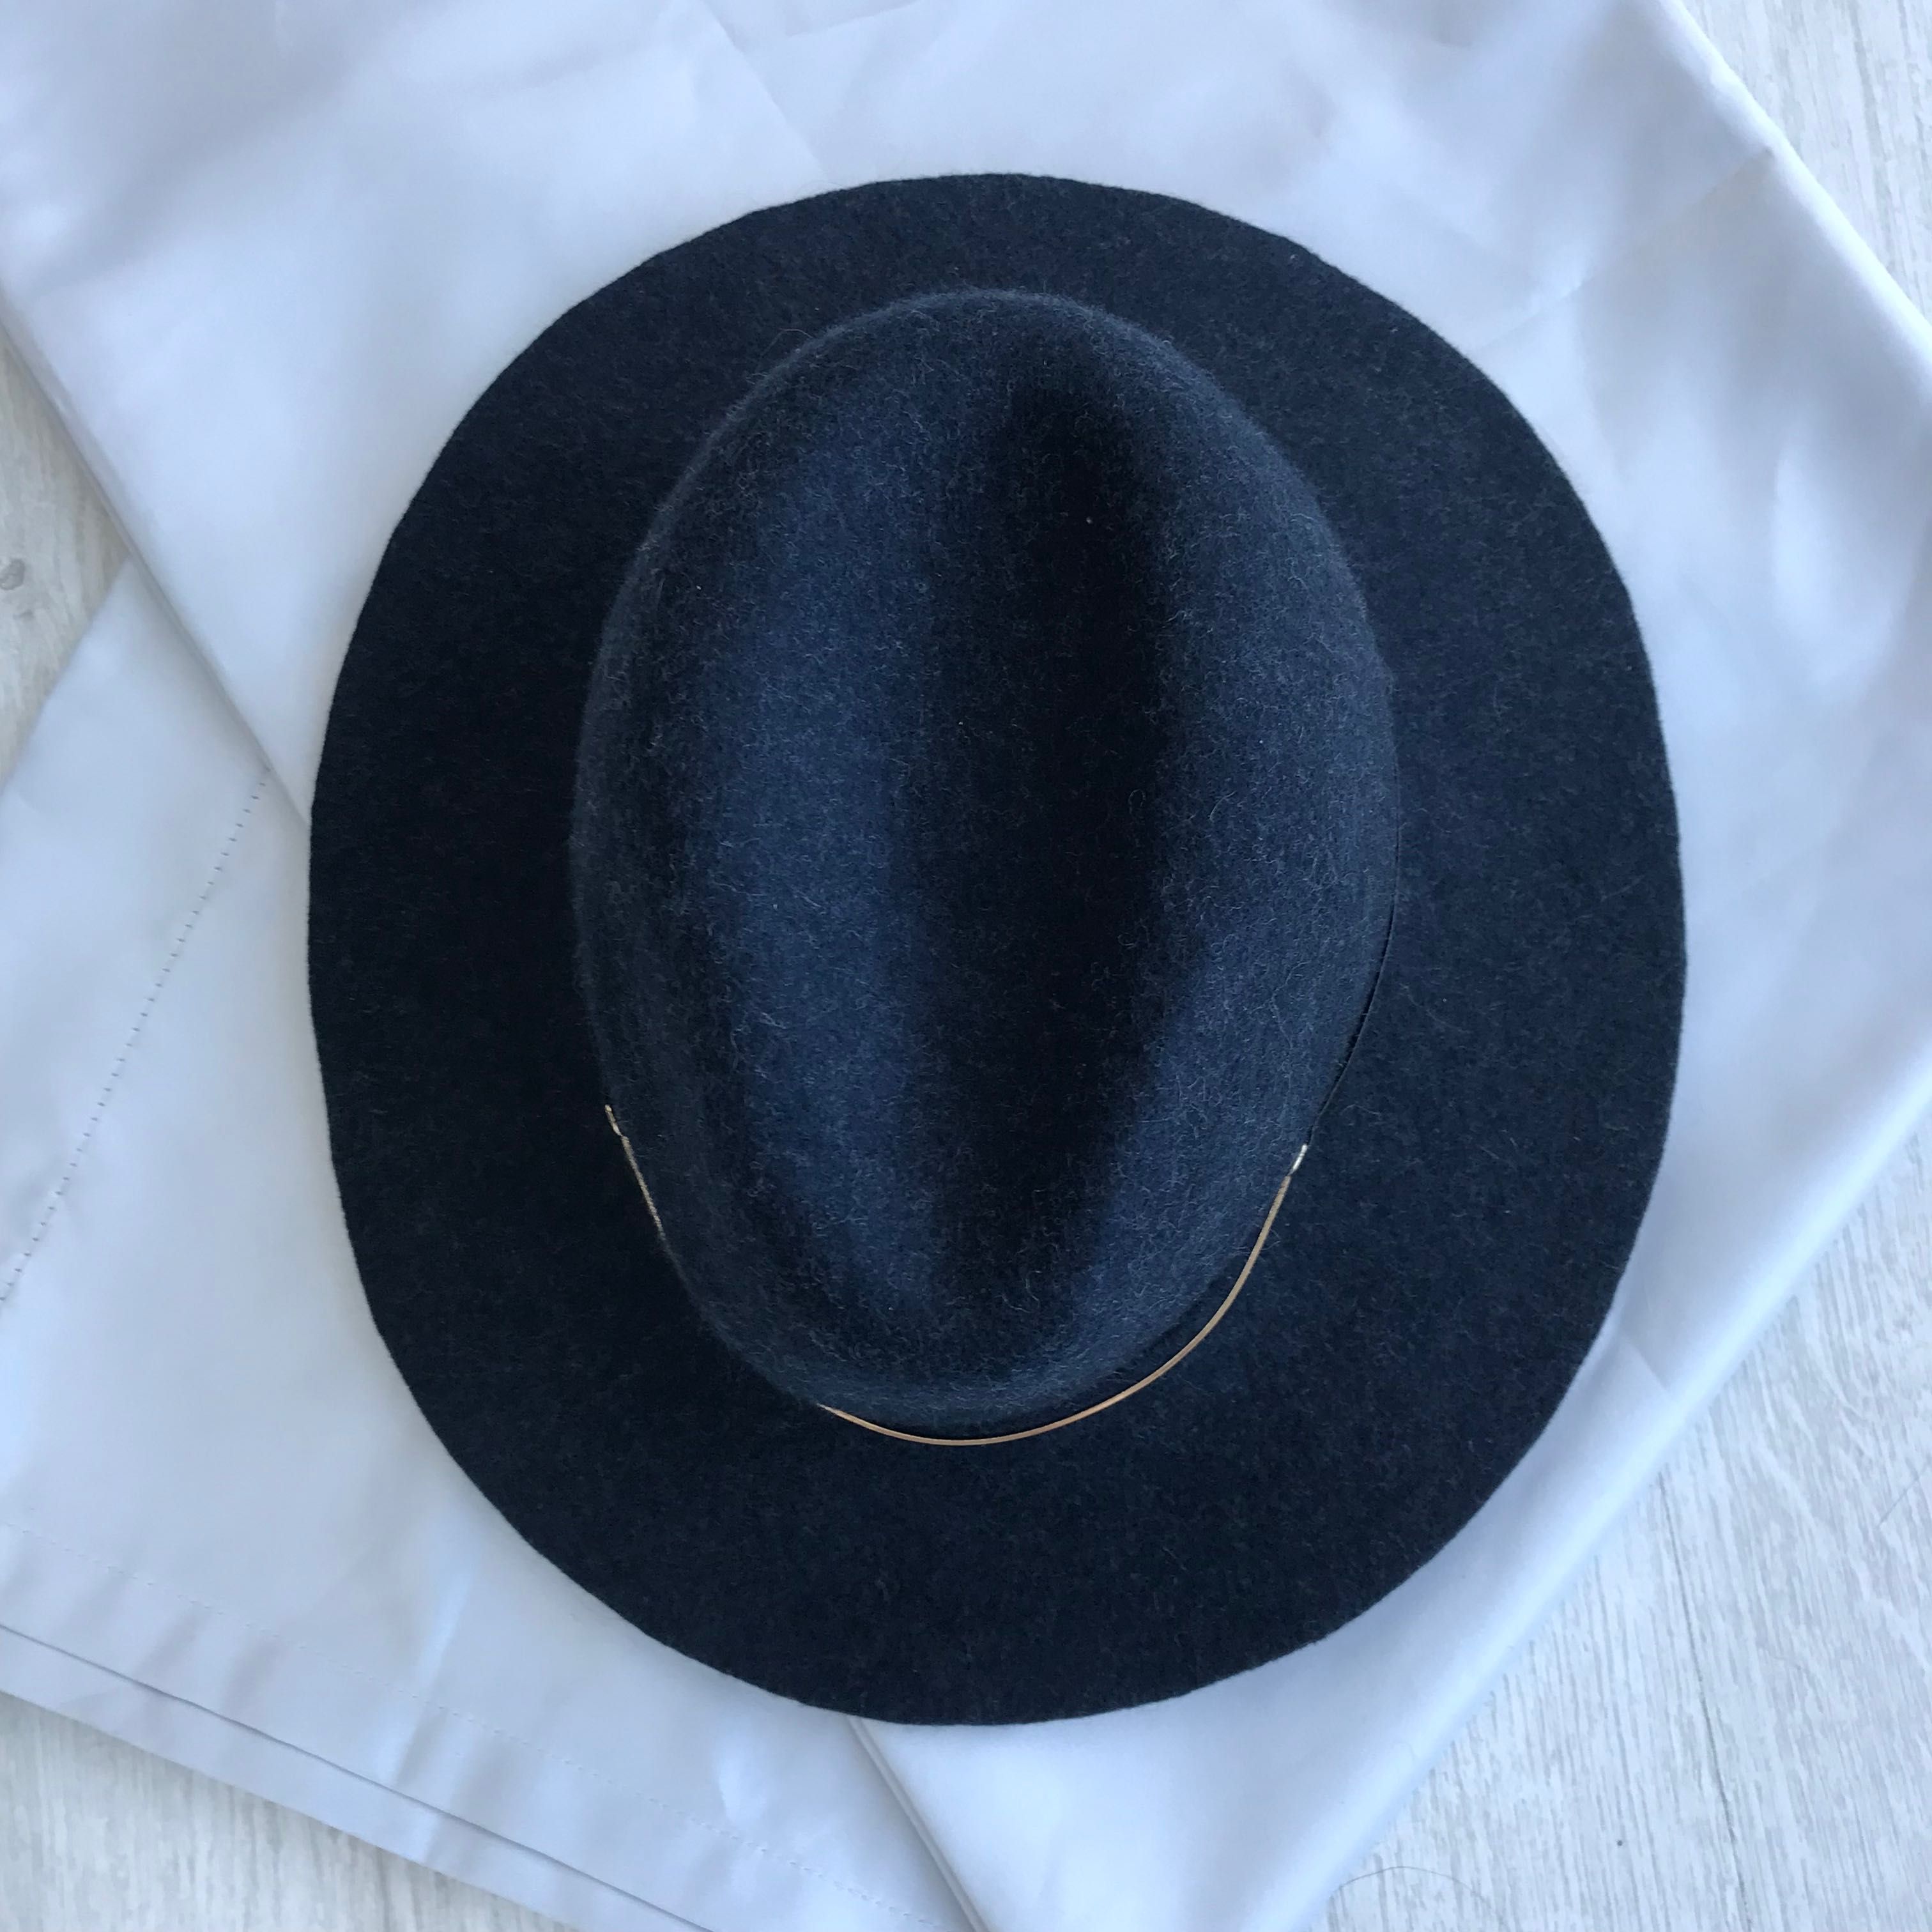 Федора, фетровий капелюх, шляпа чоловіча жіноча